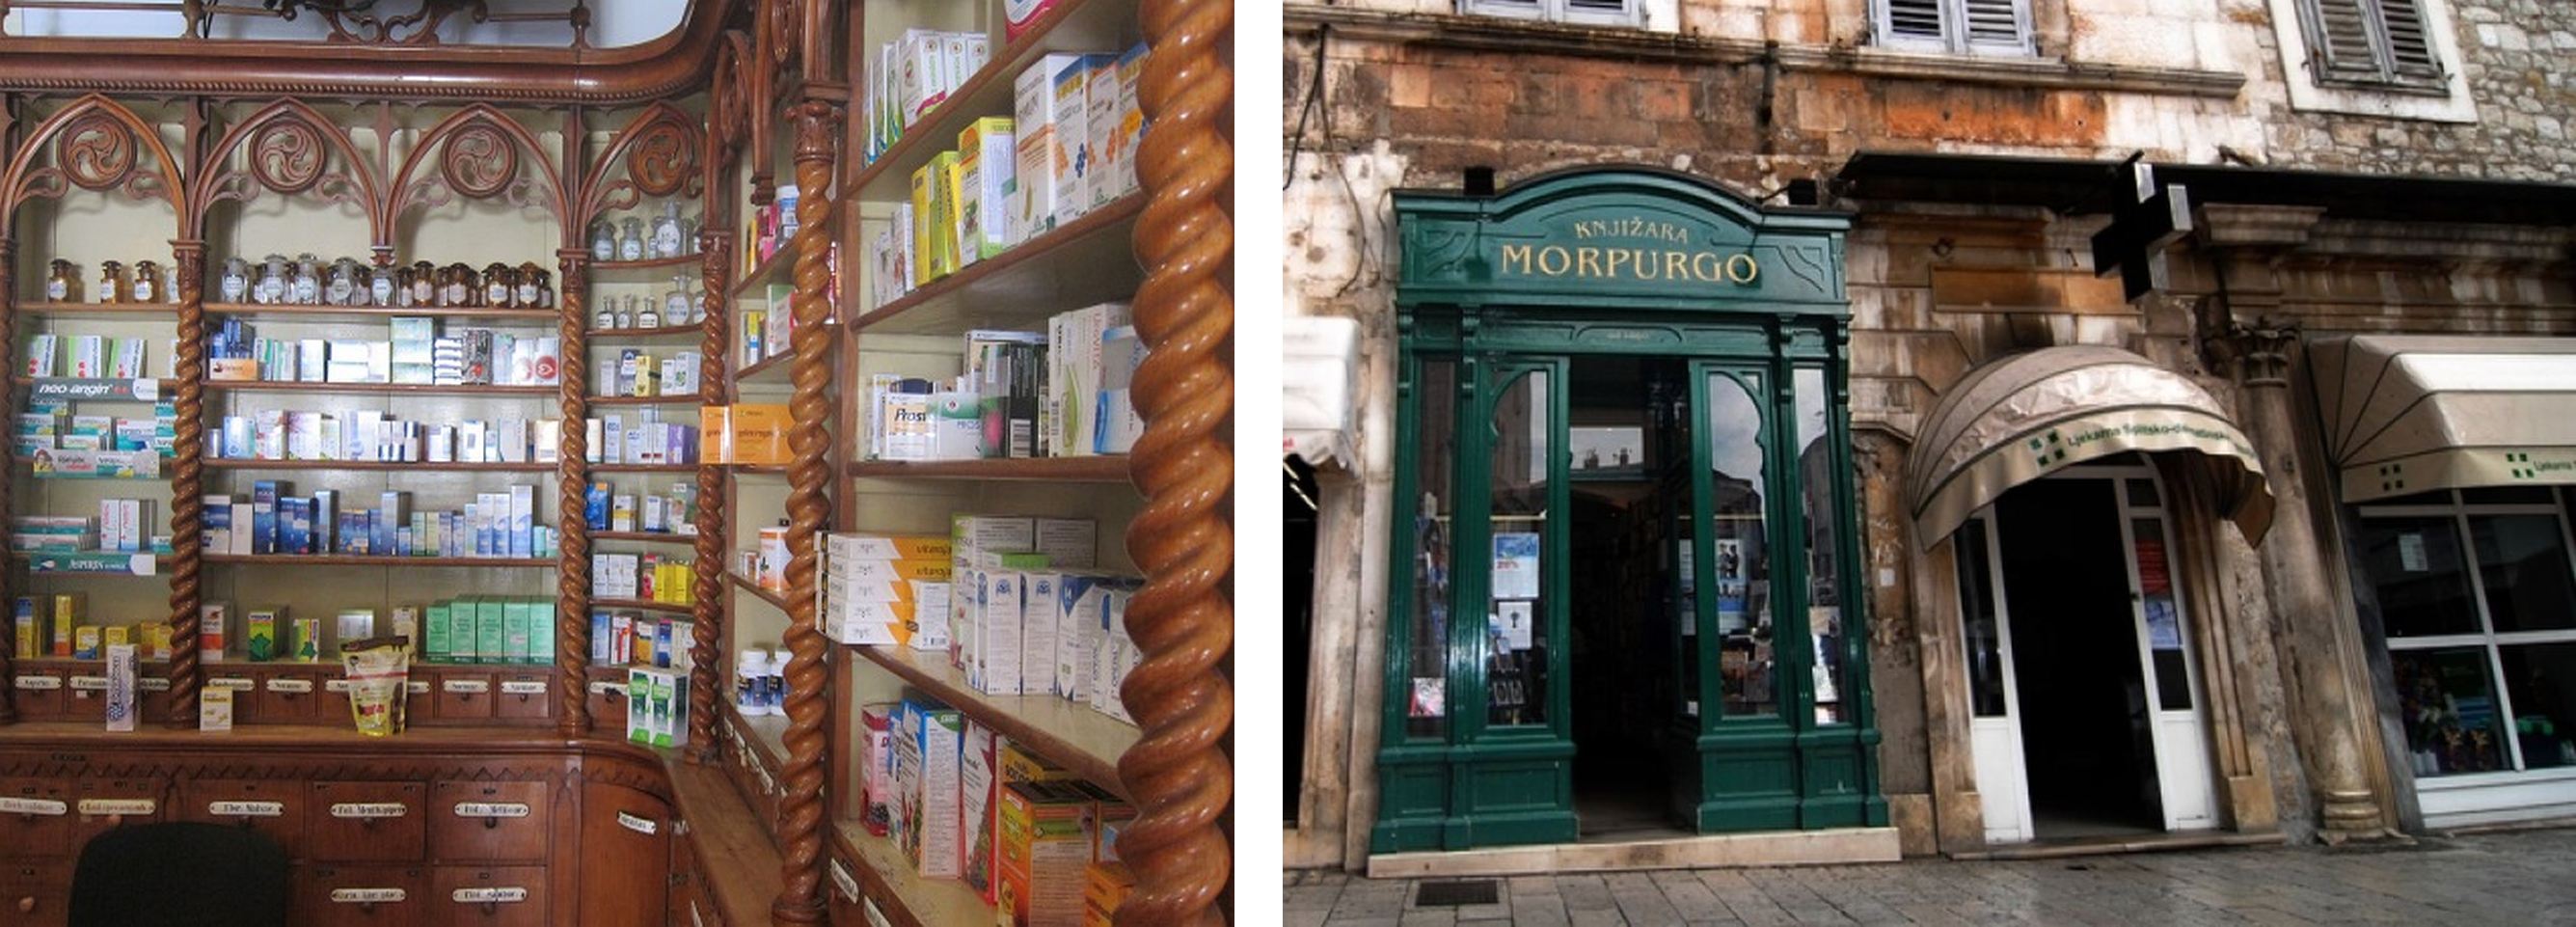 Na lijevoj je slici prikazana stara ljekarna, na desnoj je slici prikazana knjižara.